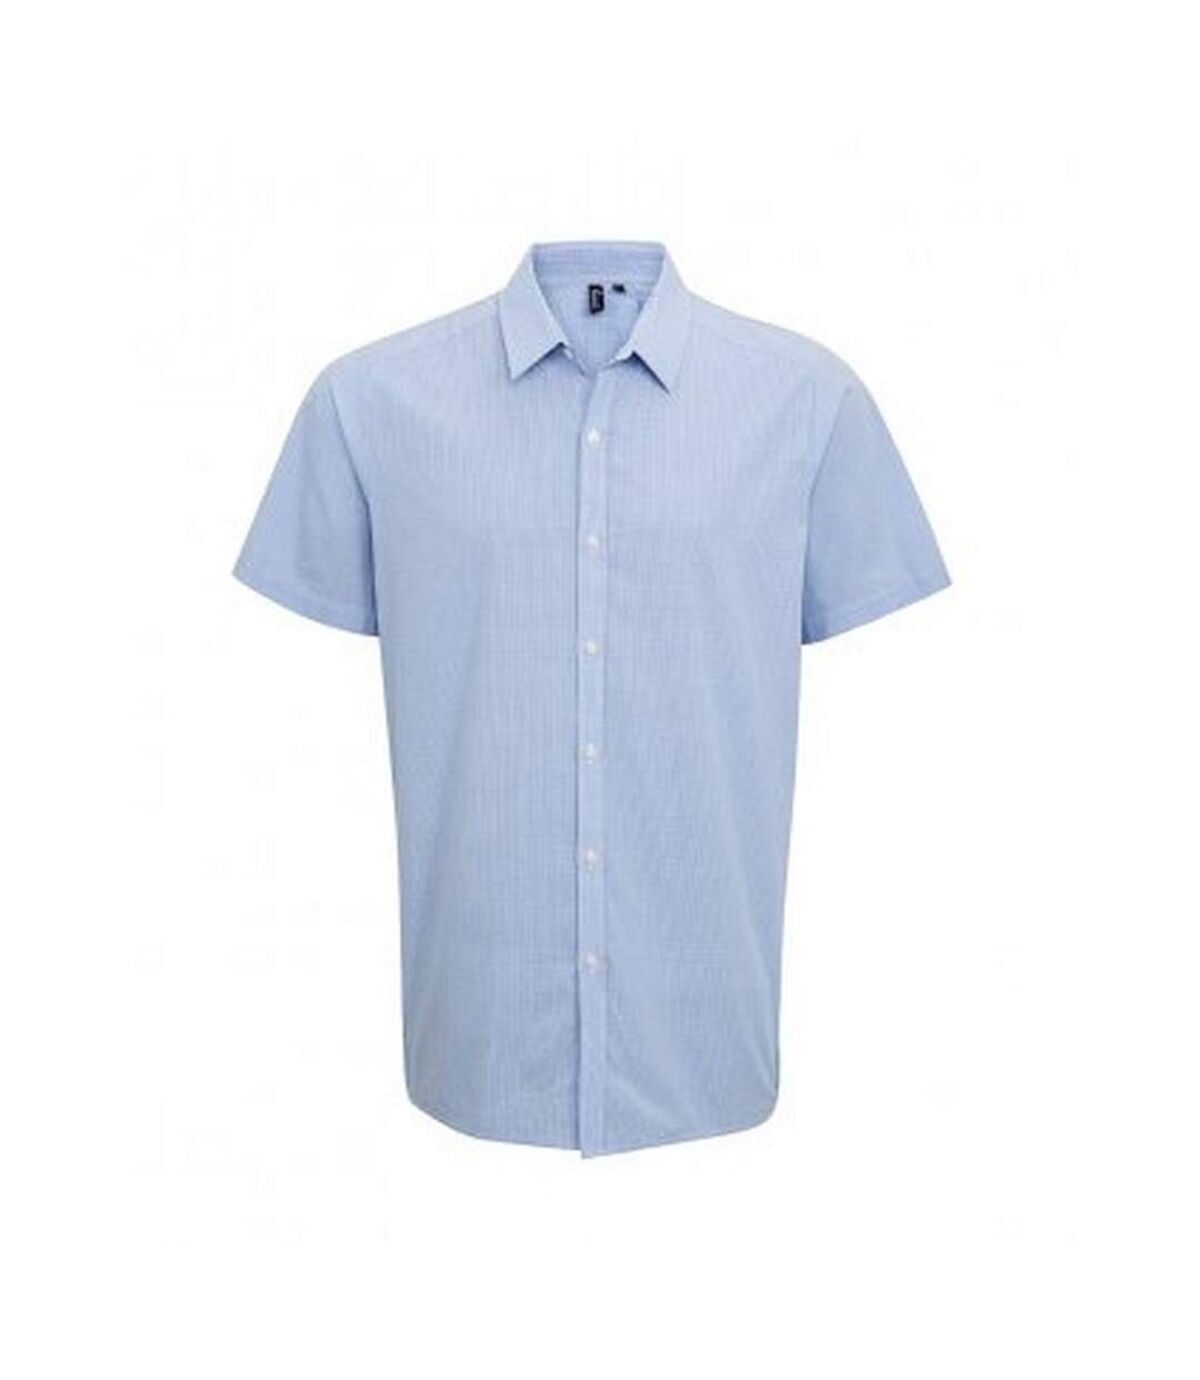 Premier Mens Gingham Short Sleeve Shirt (Light Blue/White) - UTPC3100